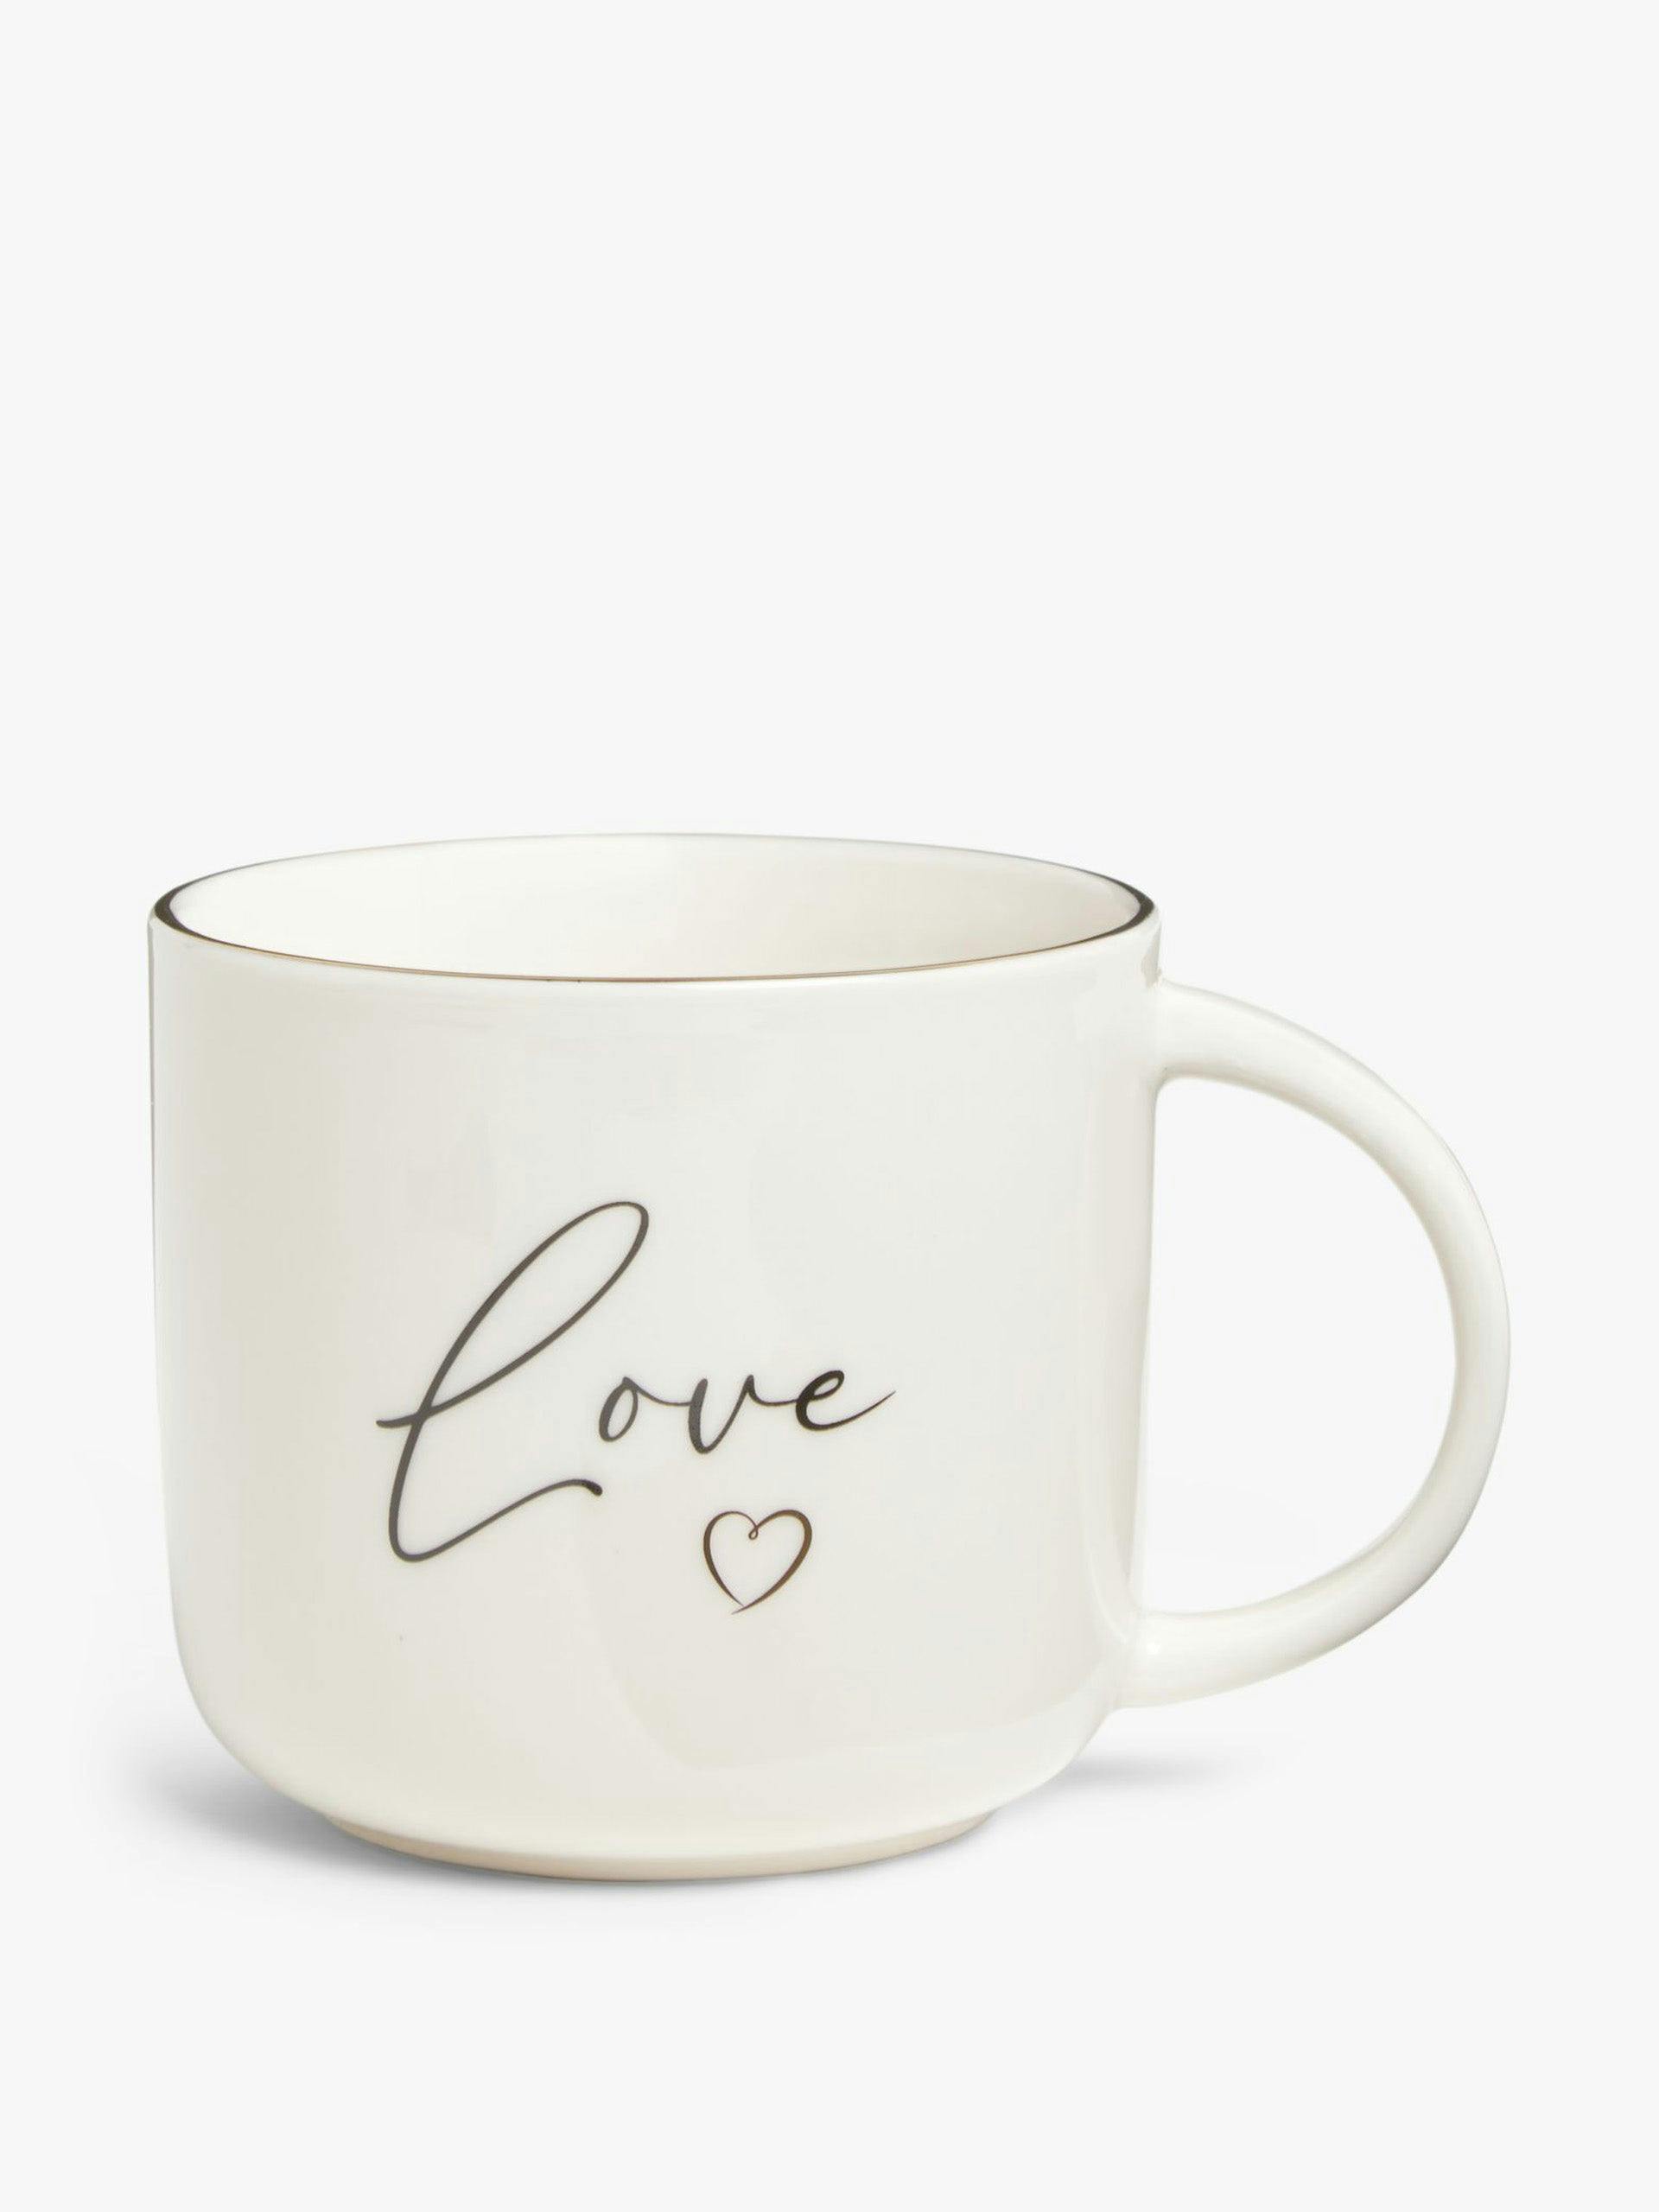 ‘Love’ fine china mug